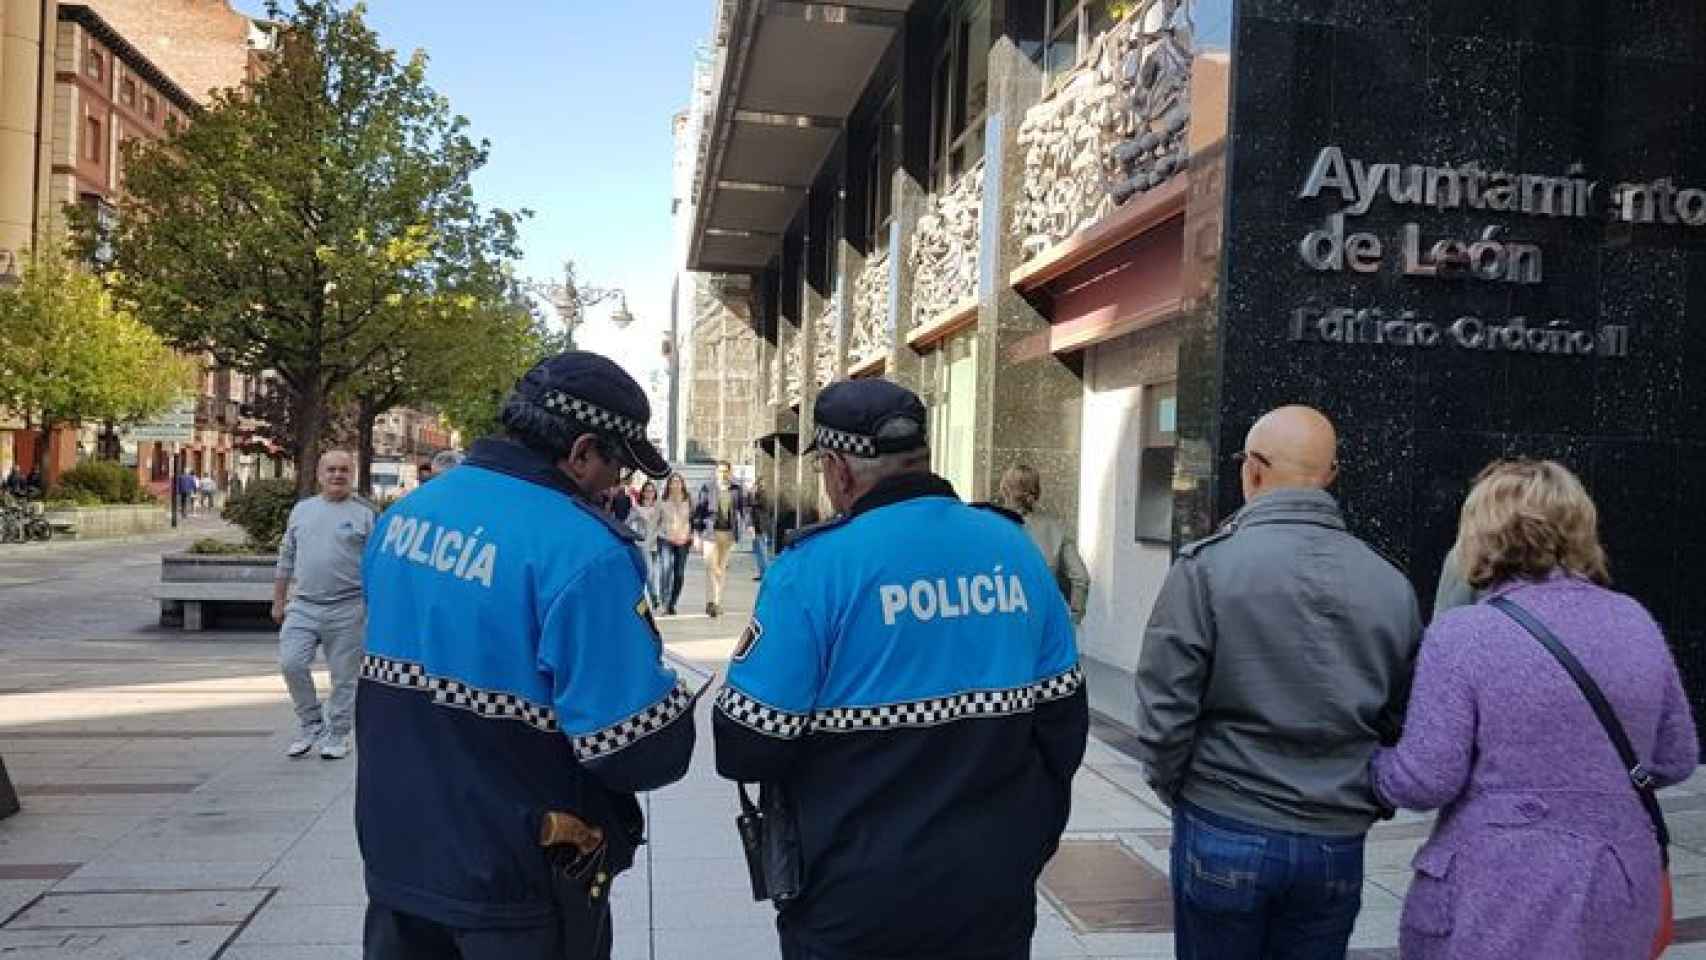 La Policía de León detiene a una persona por un intento de robo en vehículo